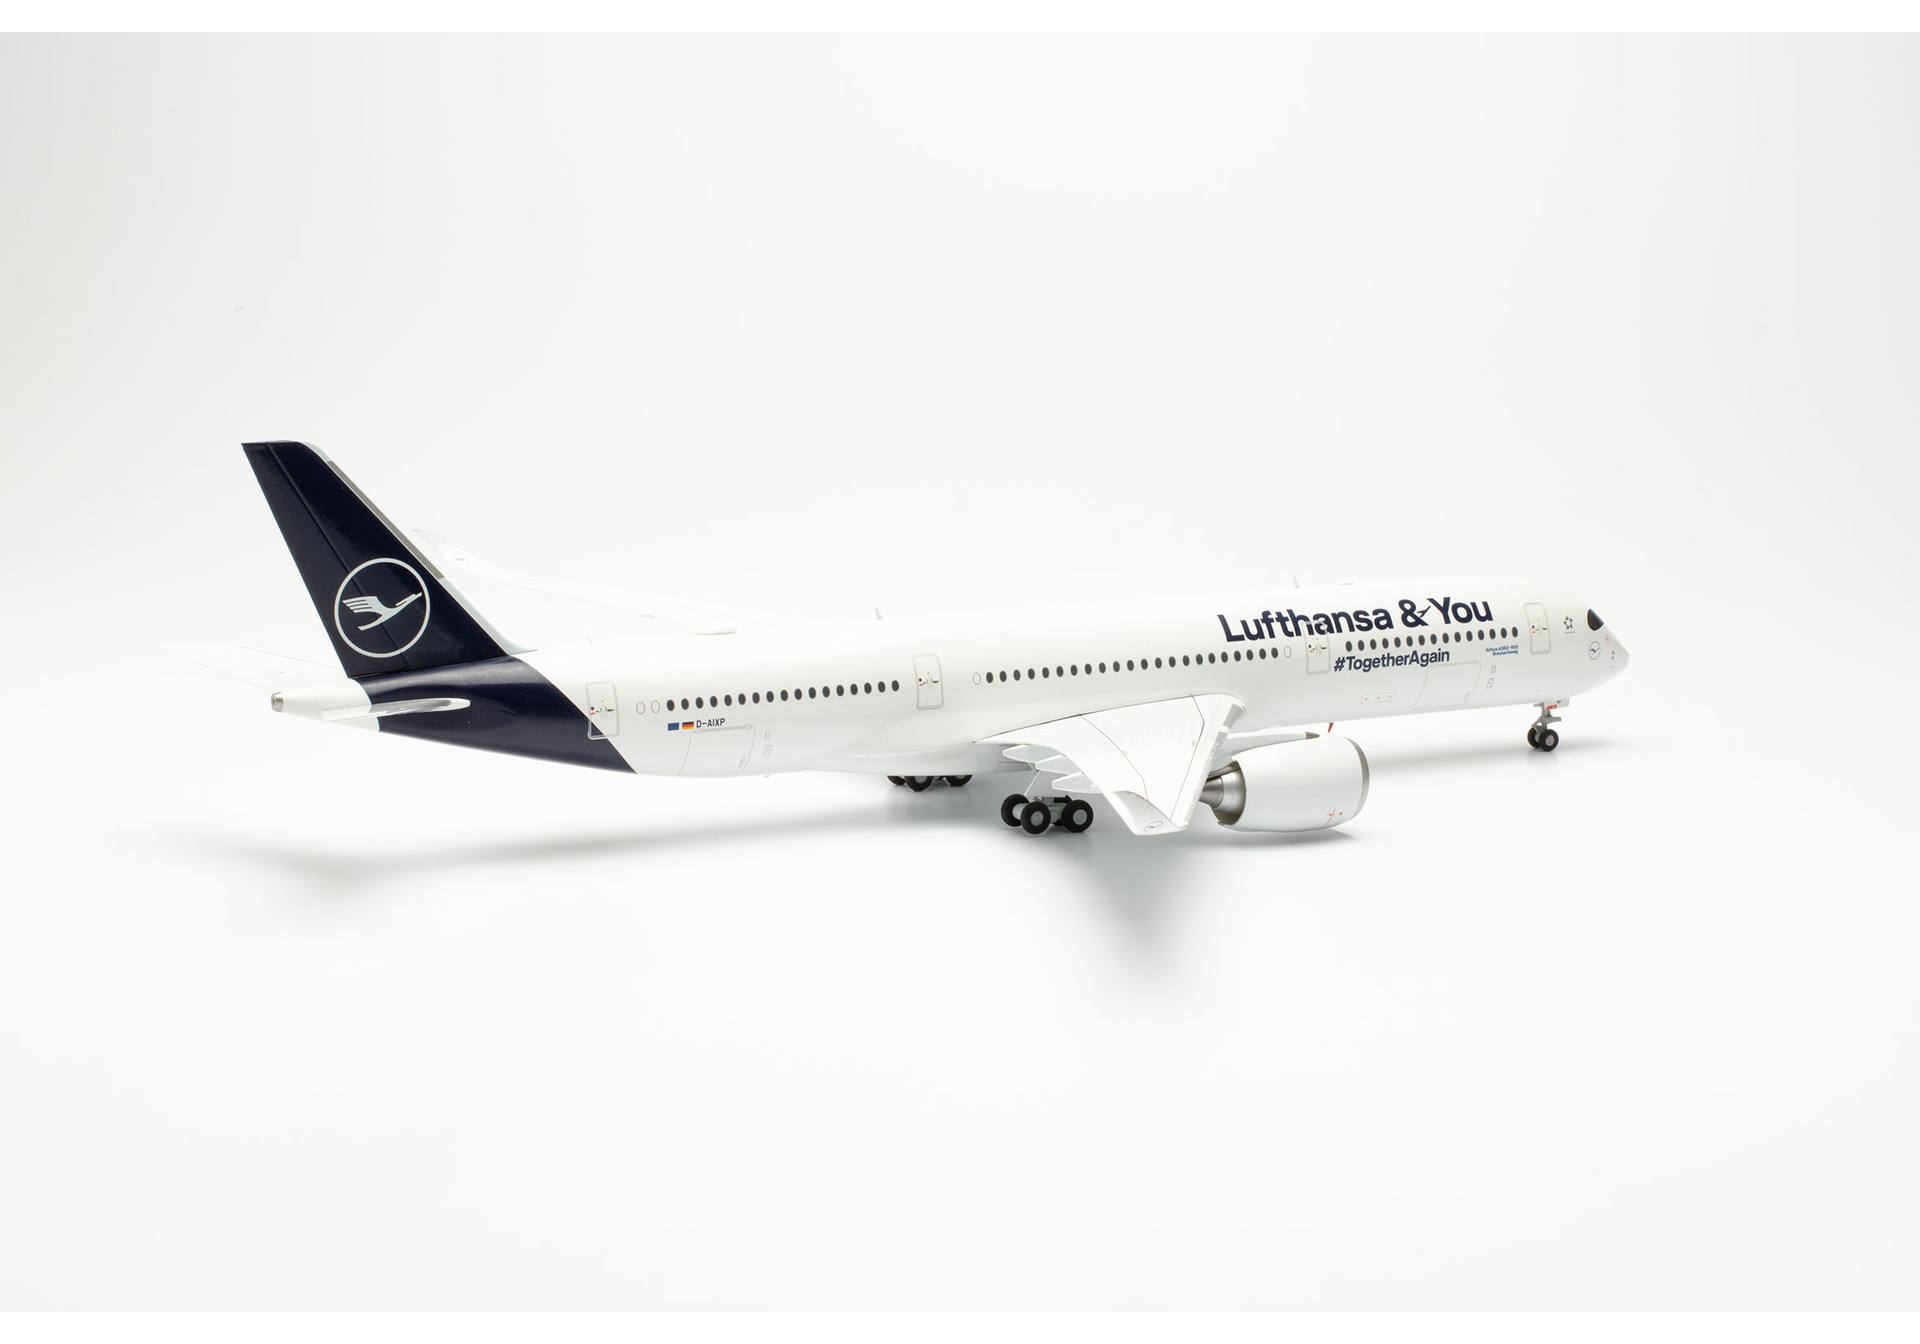 Lufthansa Airbus A350-900 “Lufthansa & You” – D-AIXP “Braunschweig”